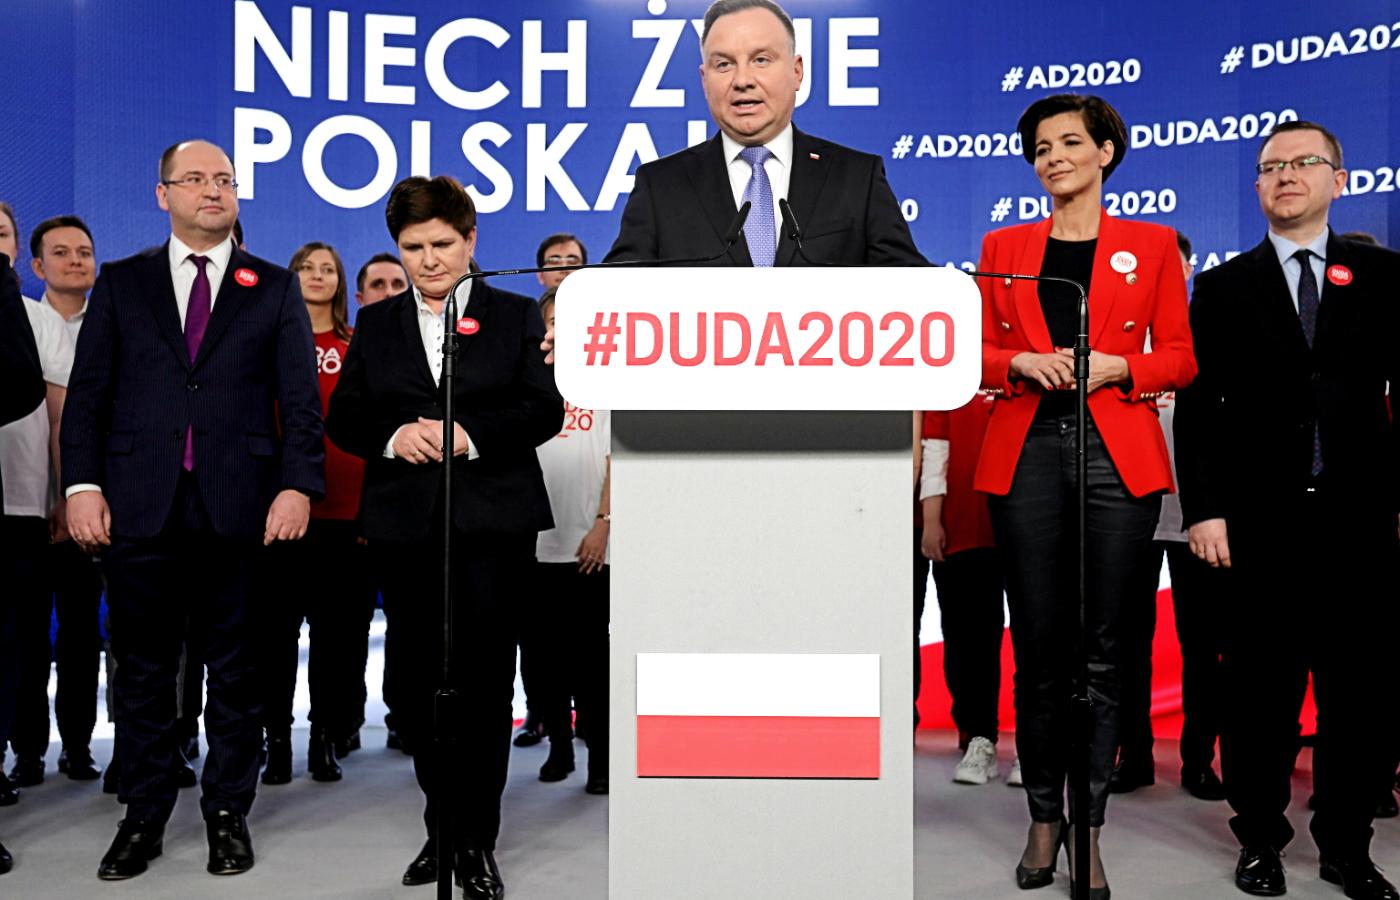 Na prawo od prezydenta, w czerwonym żakiecie, Jolanta Turczynowicz-Kieryłło, szefowa sztabu Andrzeja Dudy